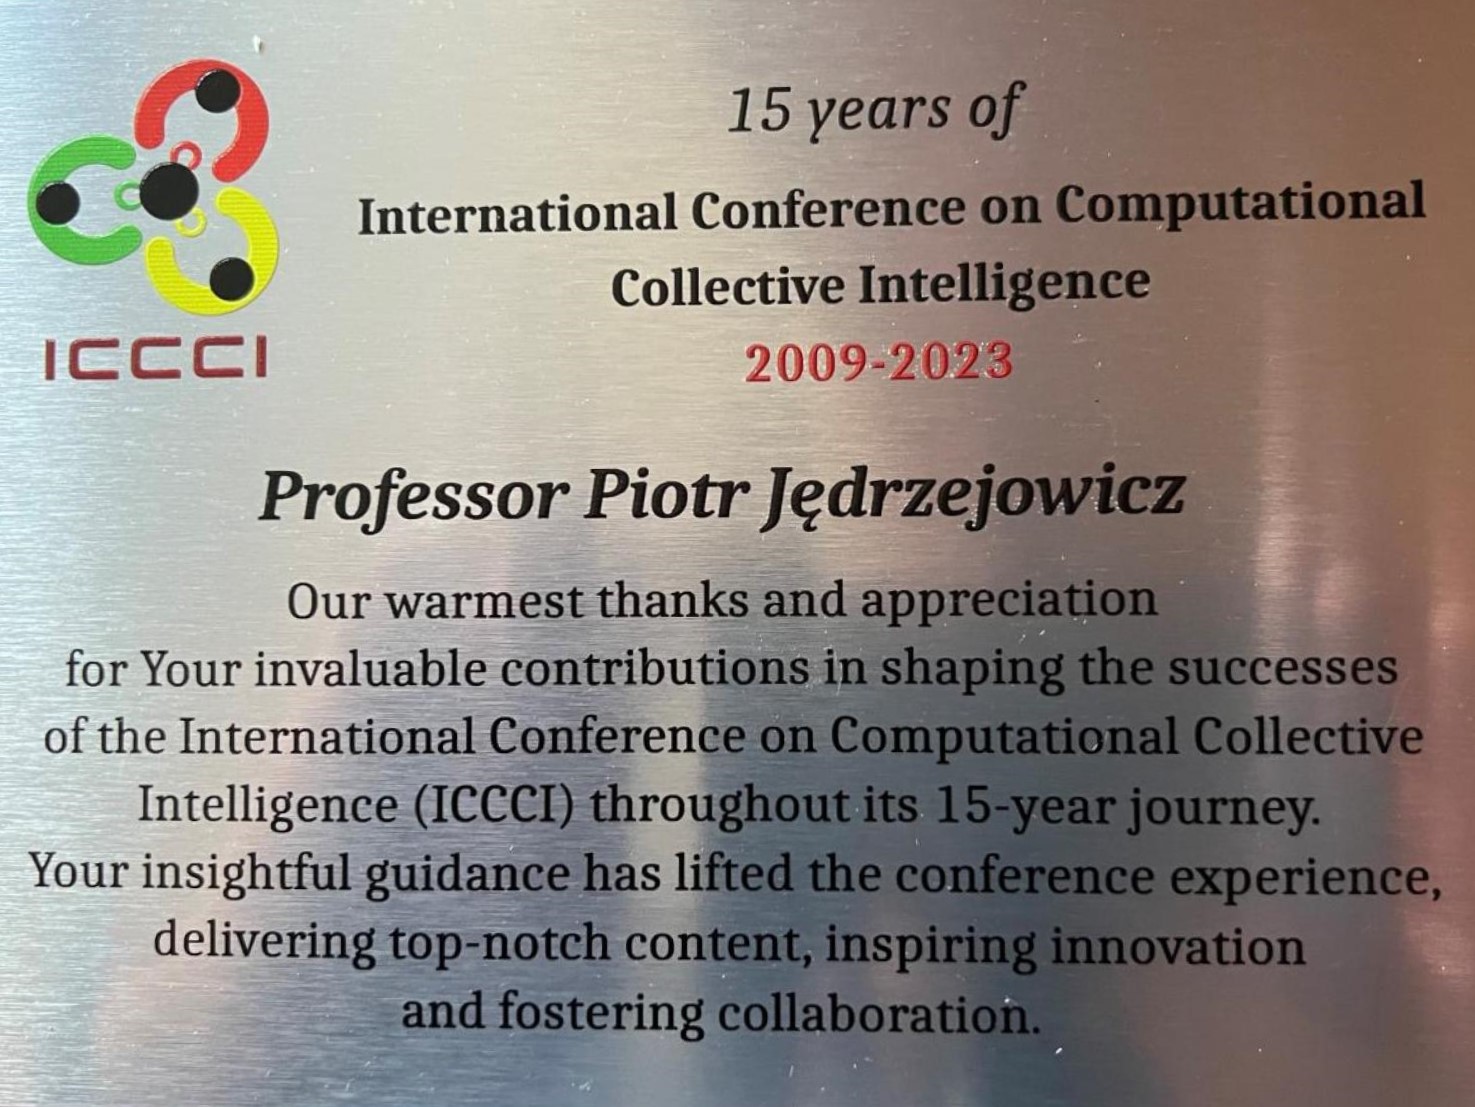 Thanks to Prof. Piotr Jedrzejowicz